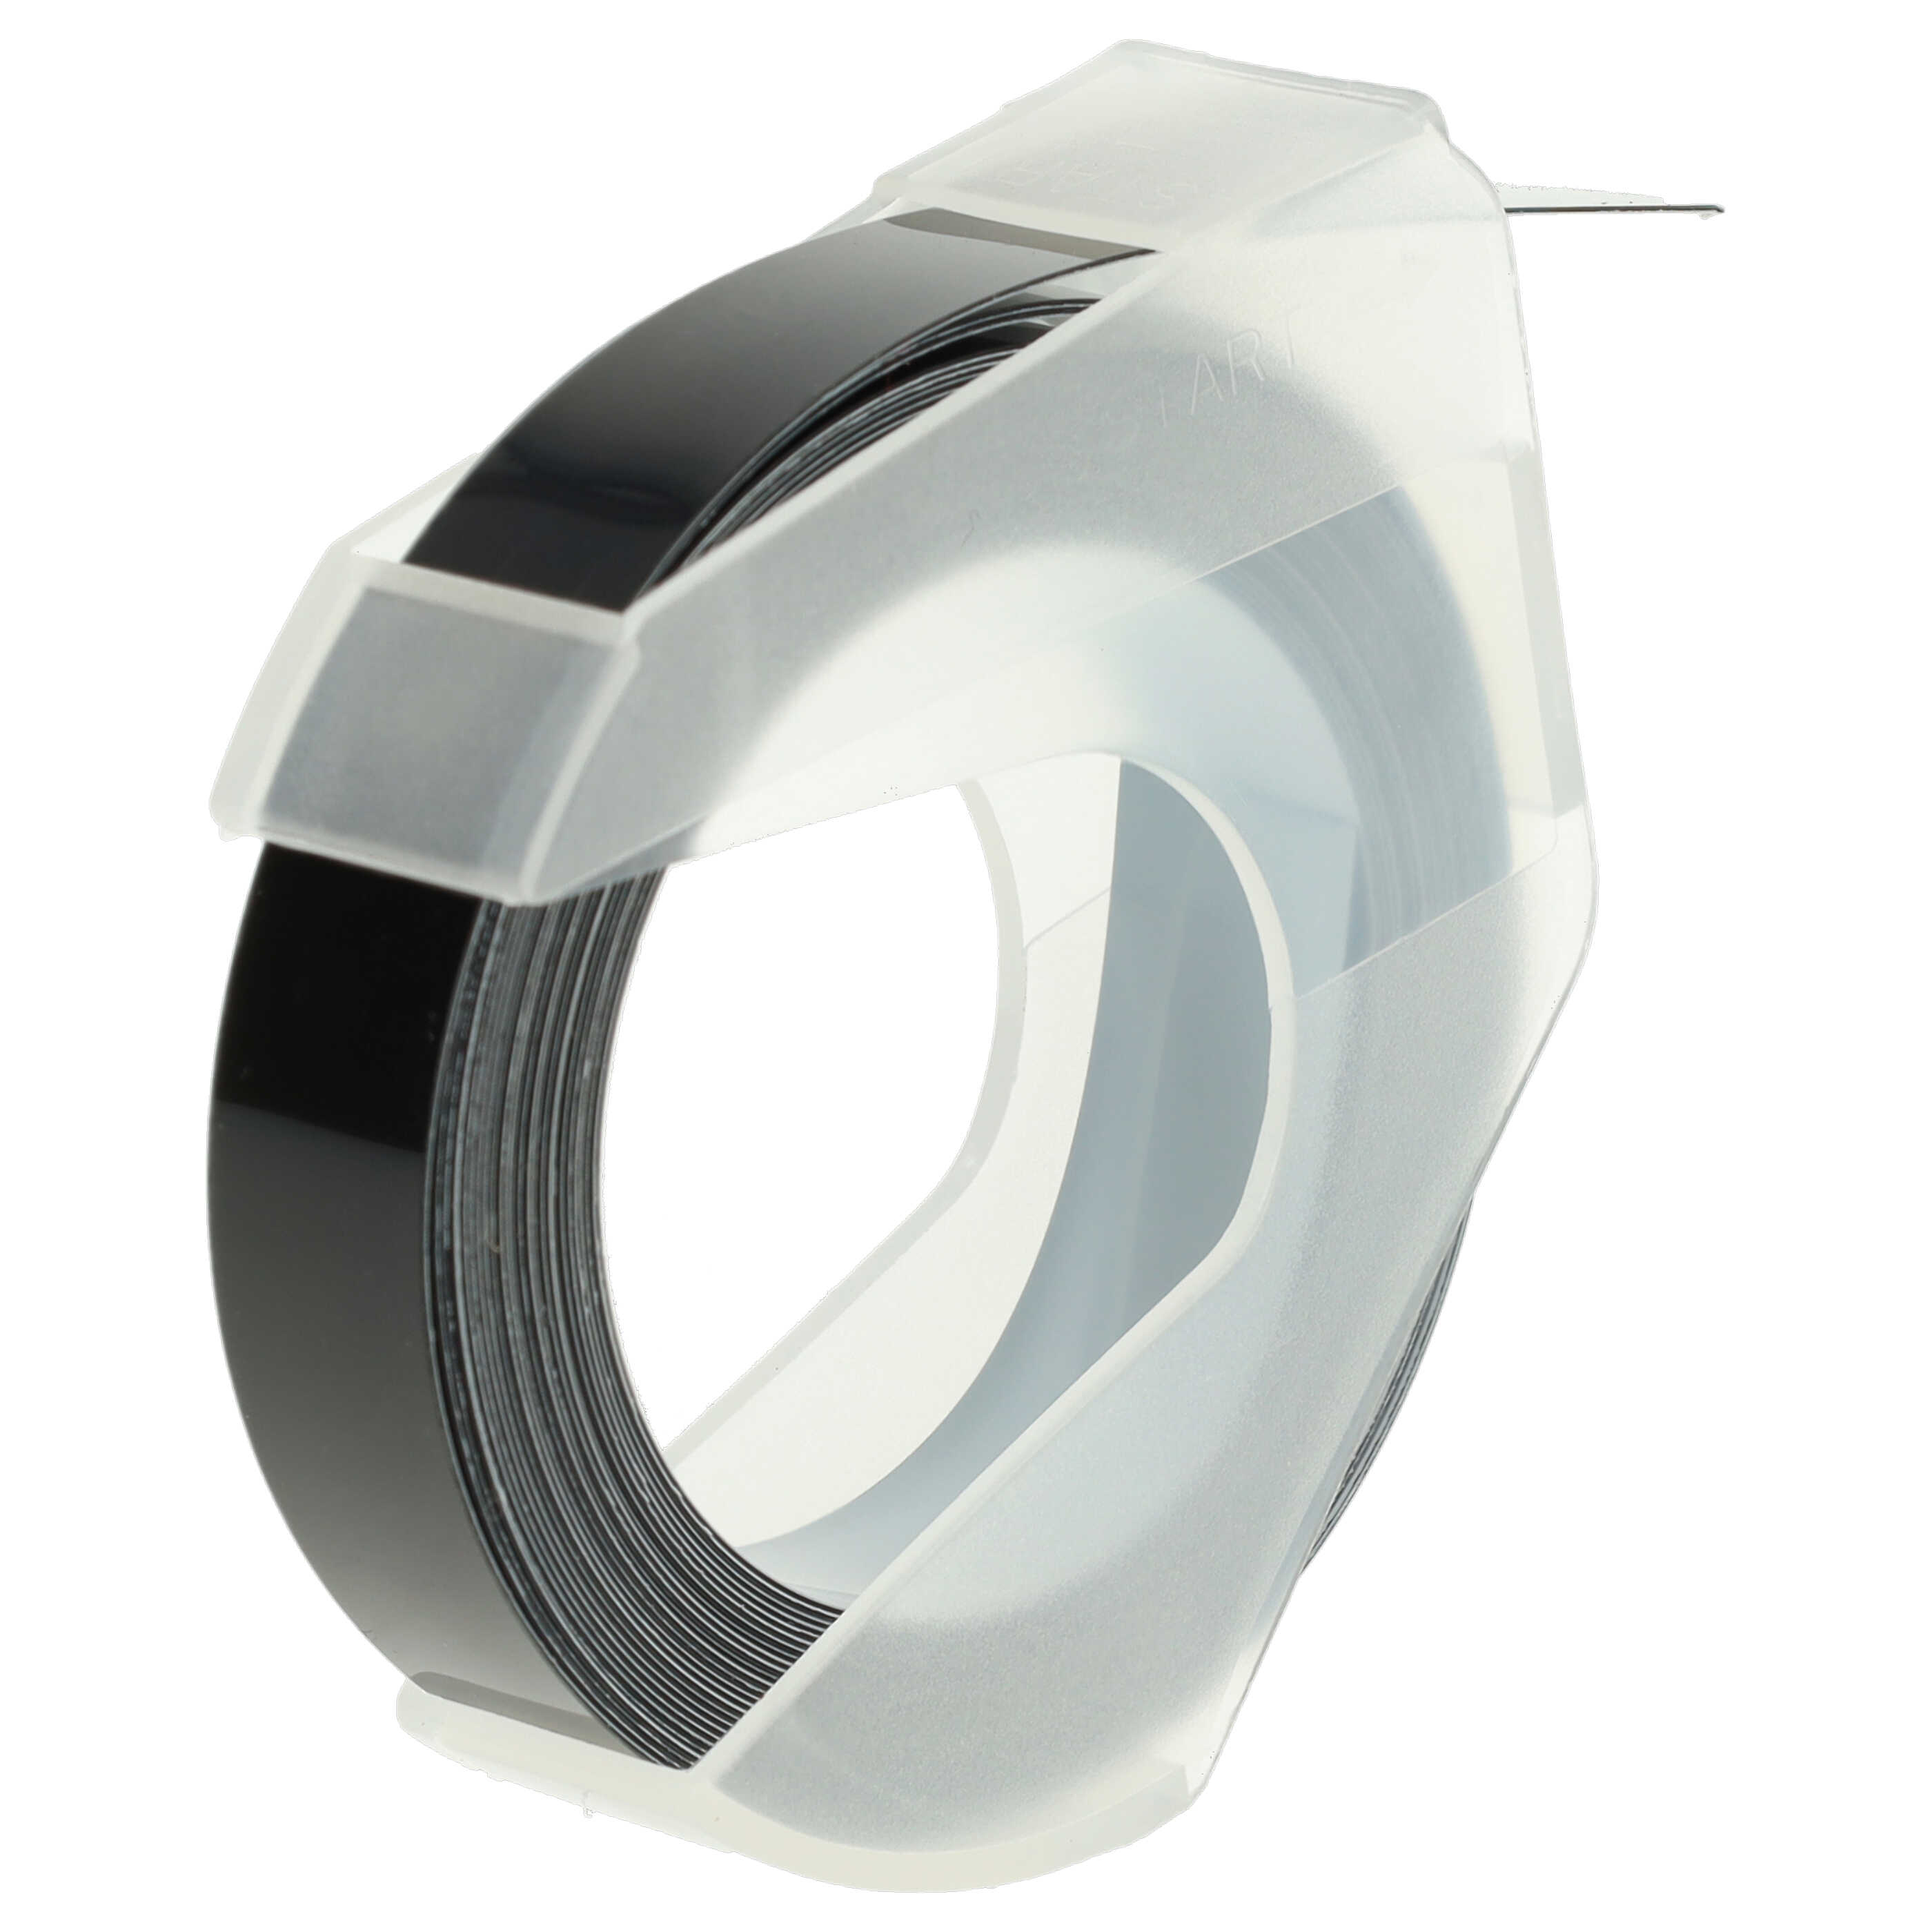 10x Casete cinta relieve 3D Casete cinta escritura reemplaza Dymo 520109, 0898130 Blanco su Negro